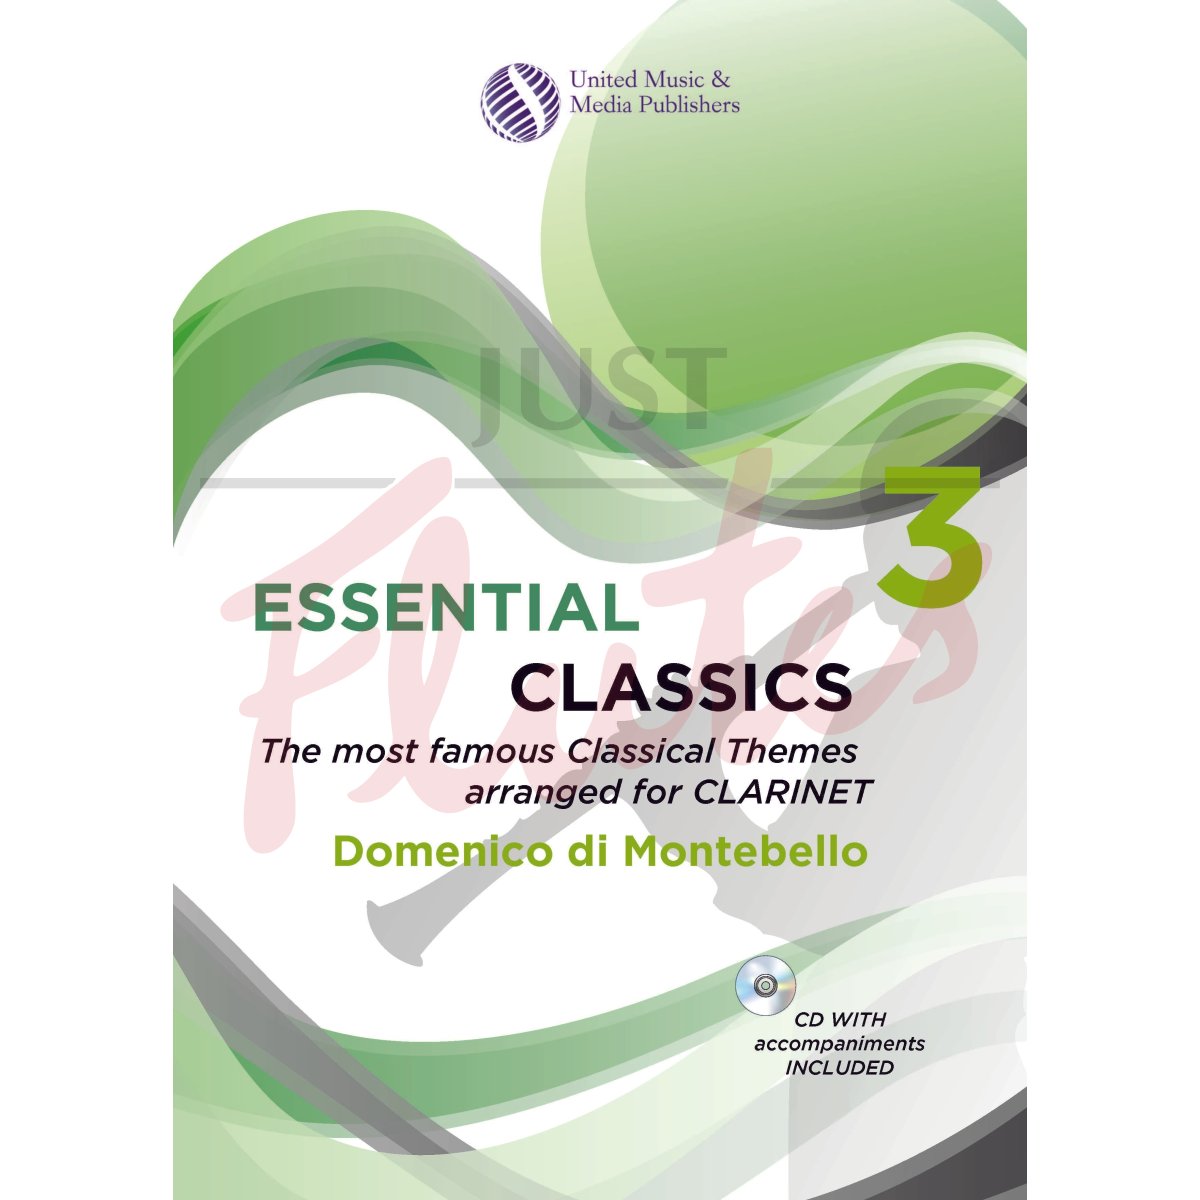 Essential Classics 3 for Clarinet